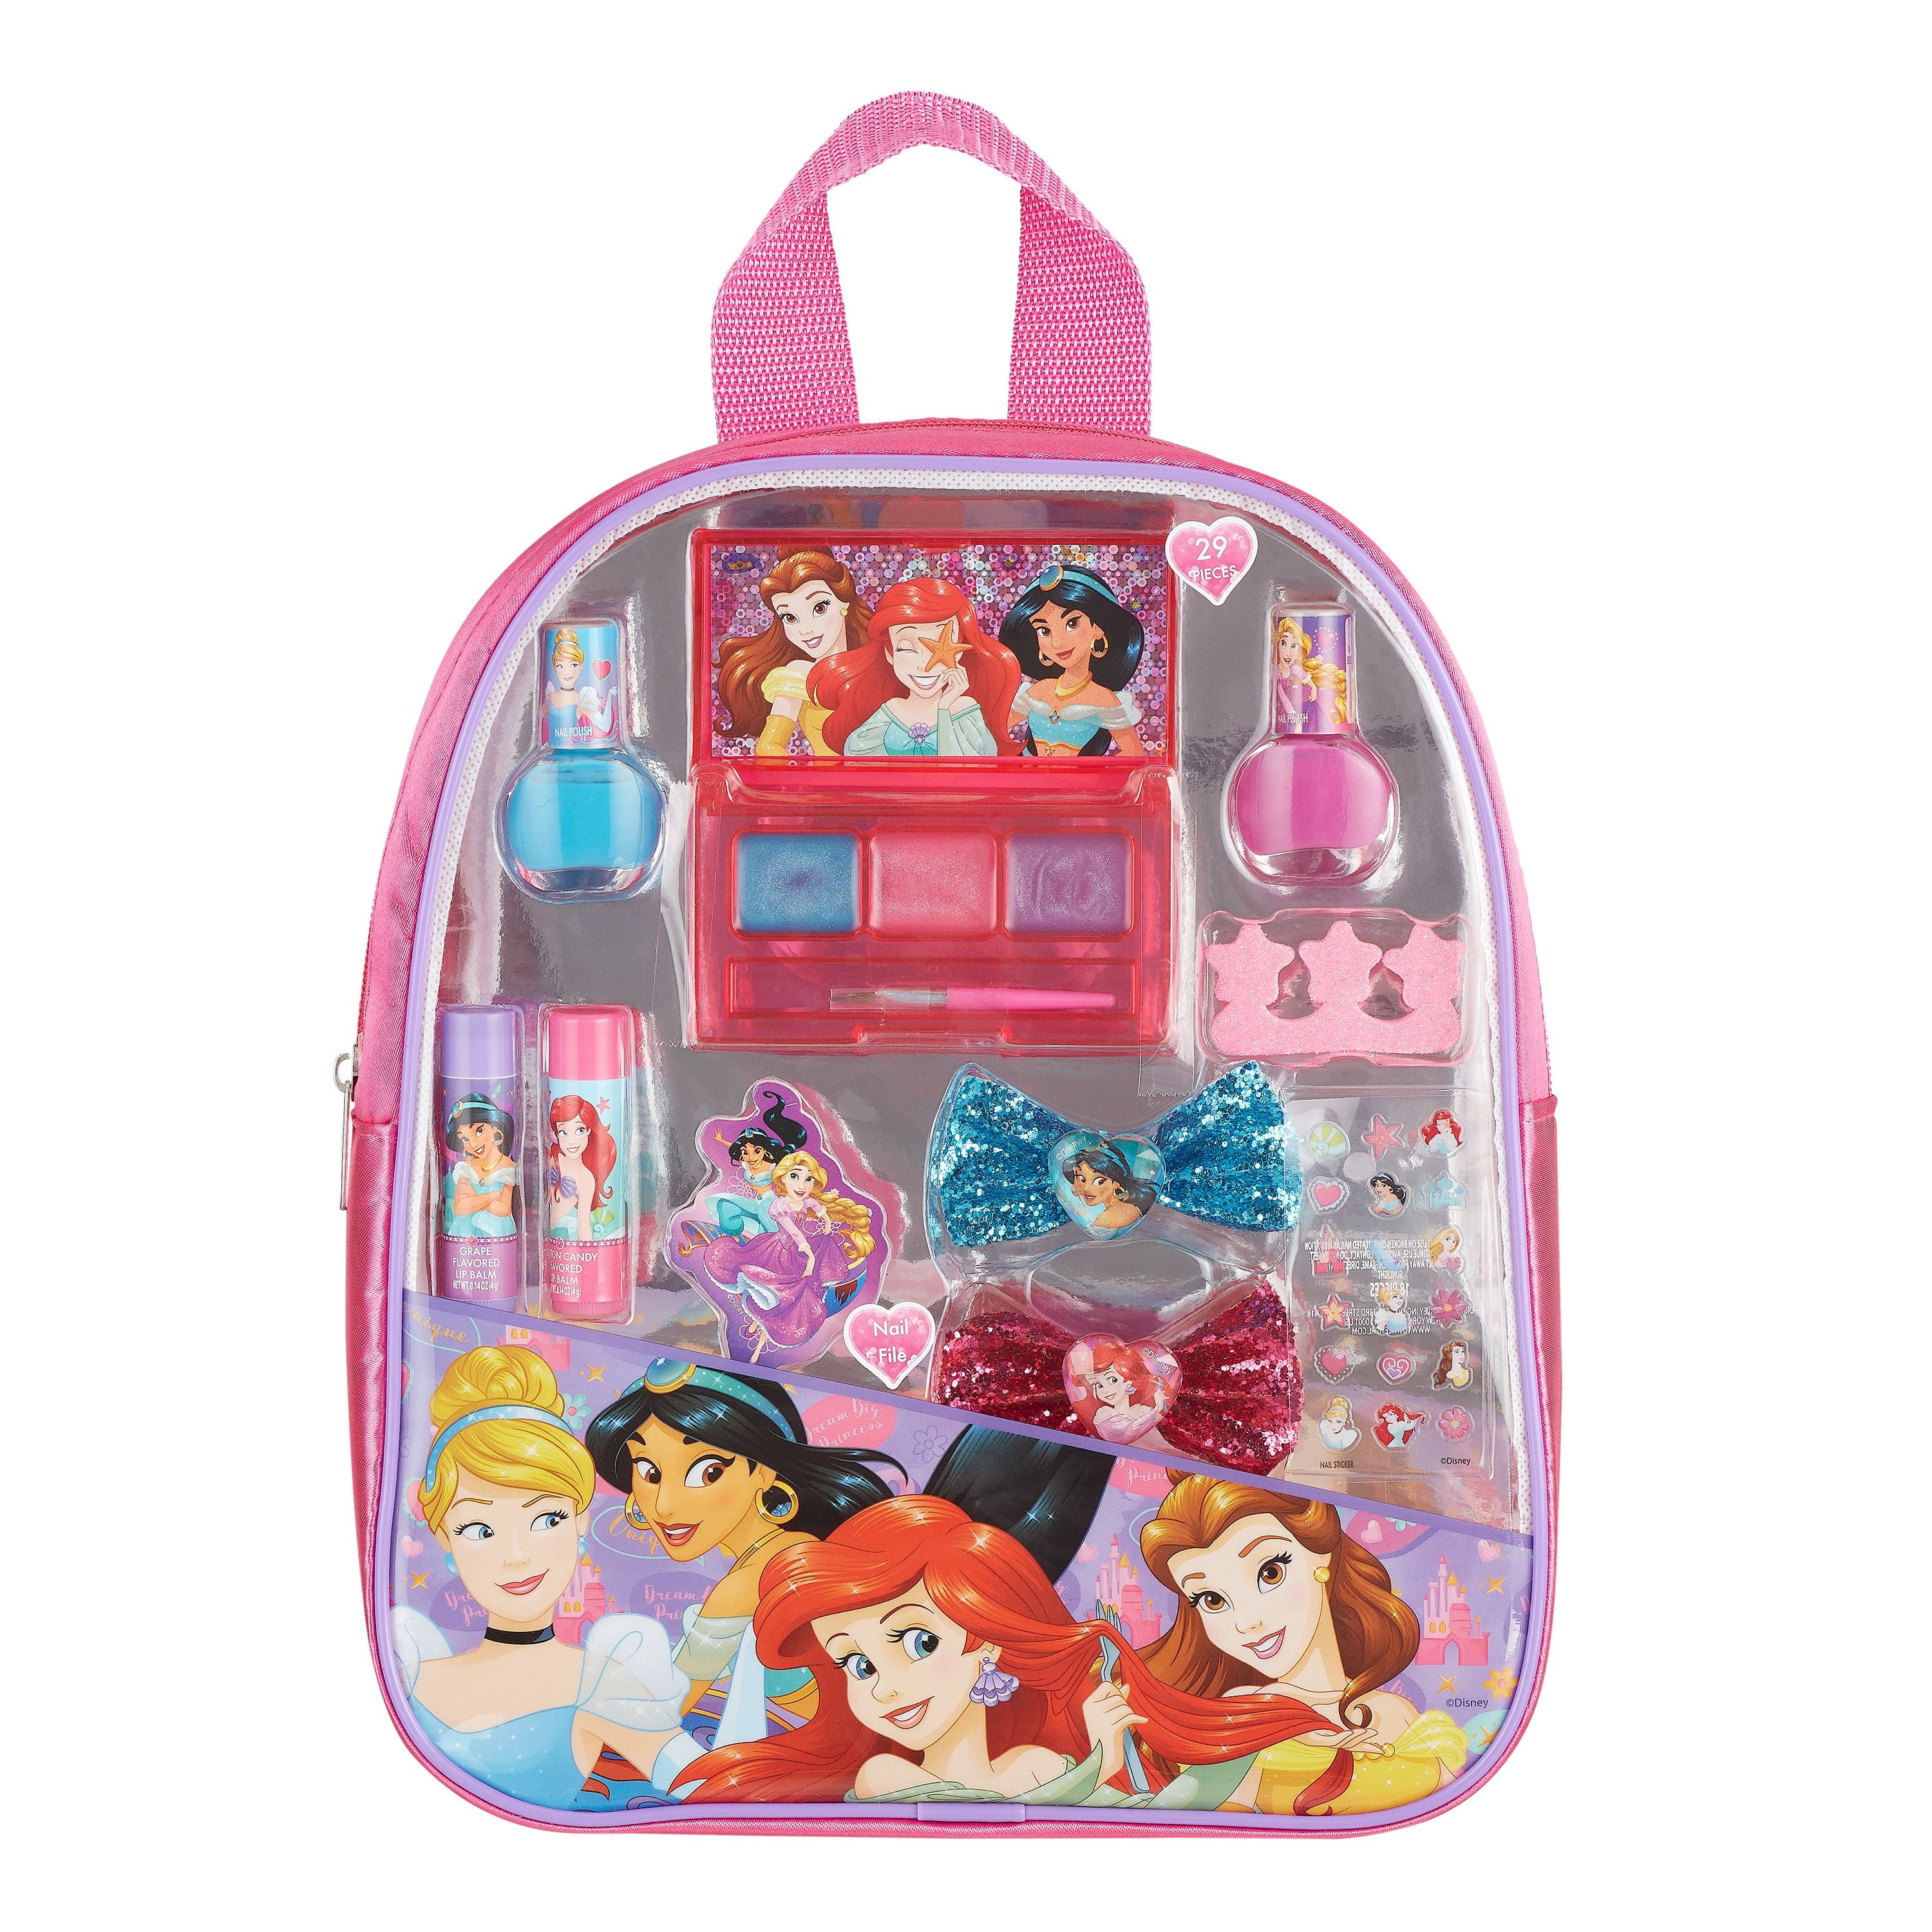 Disney Princess Lunchbox Makeup Set - Pink